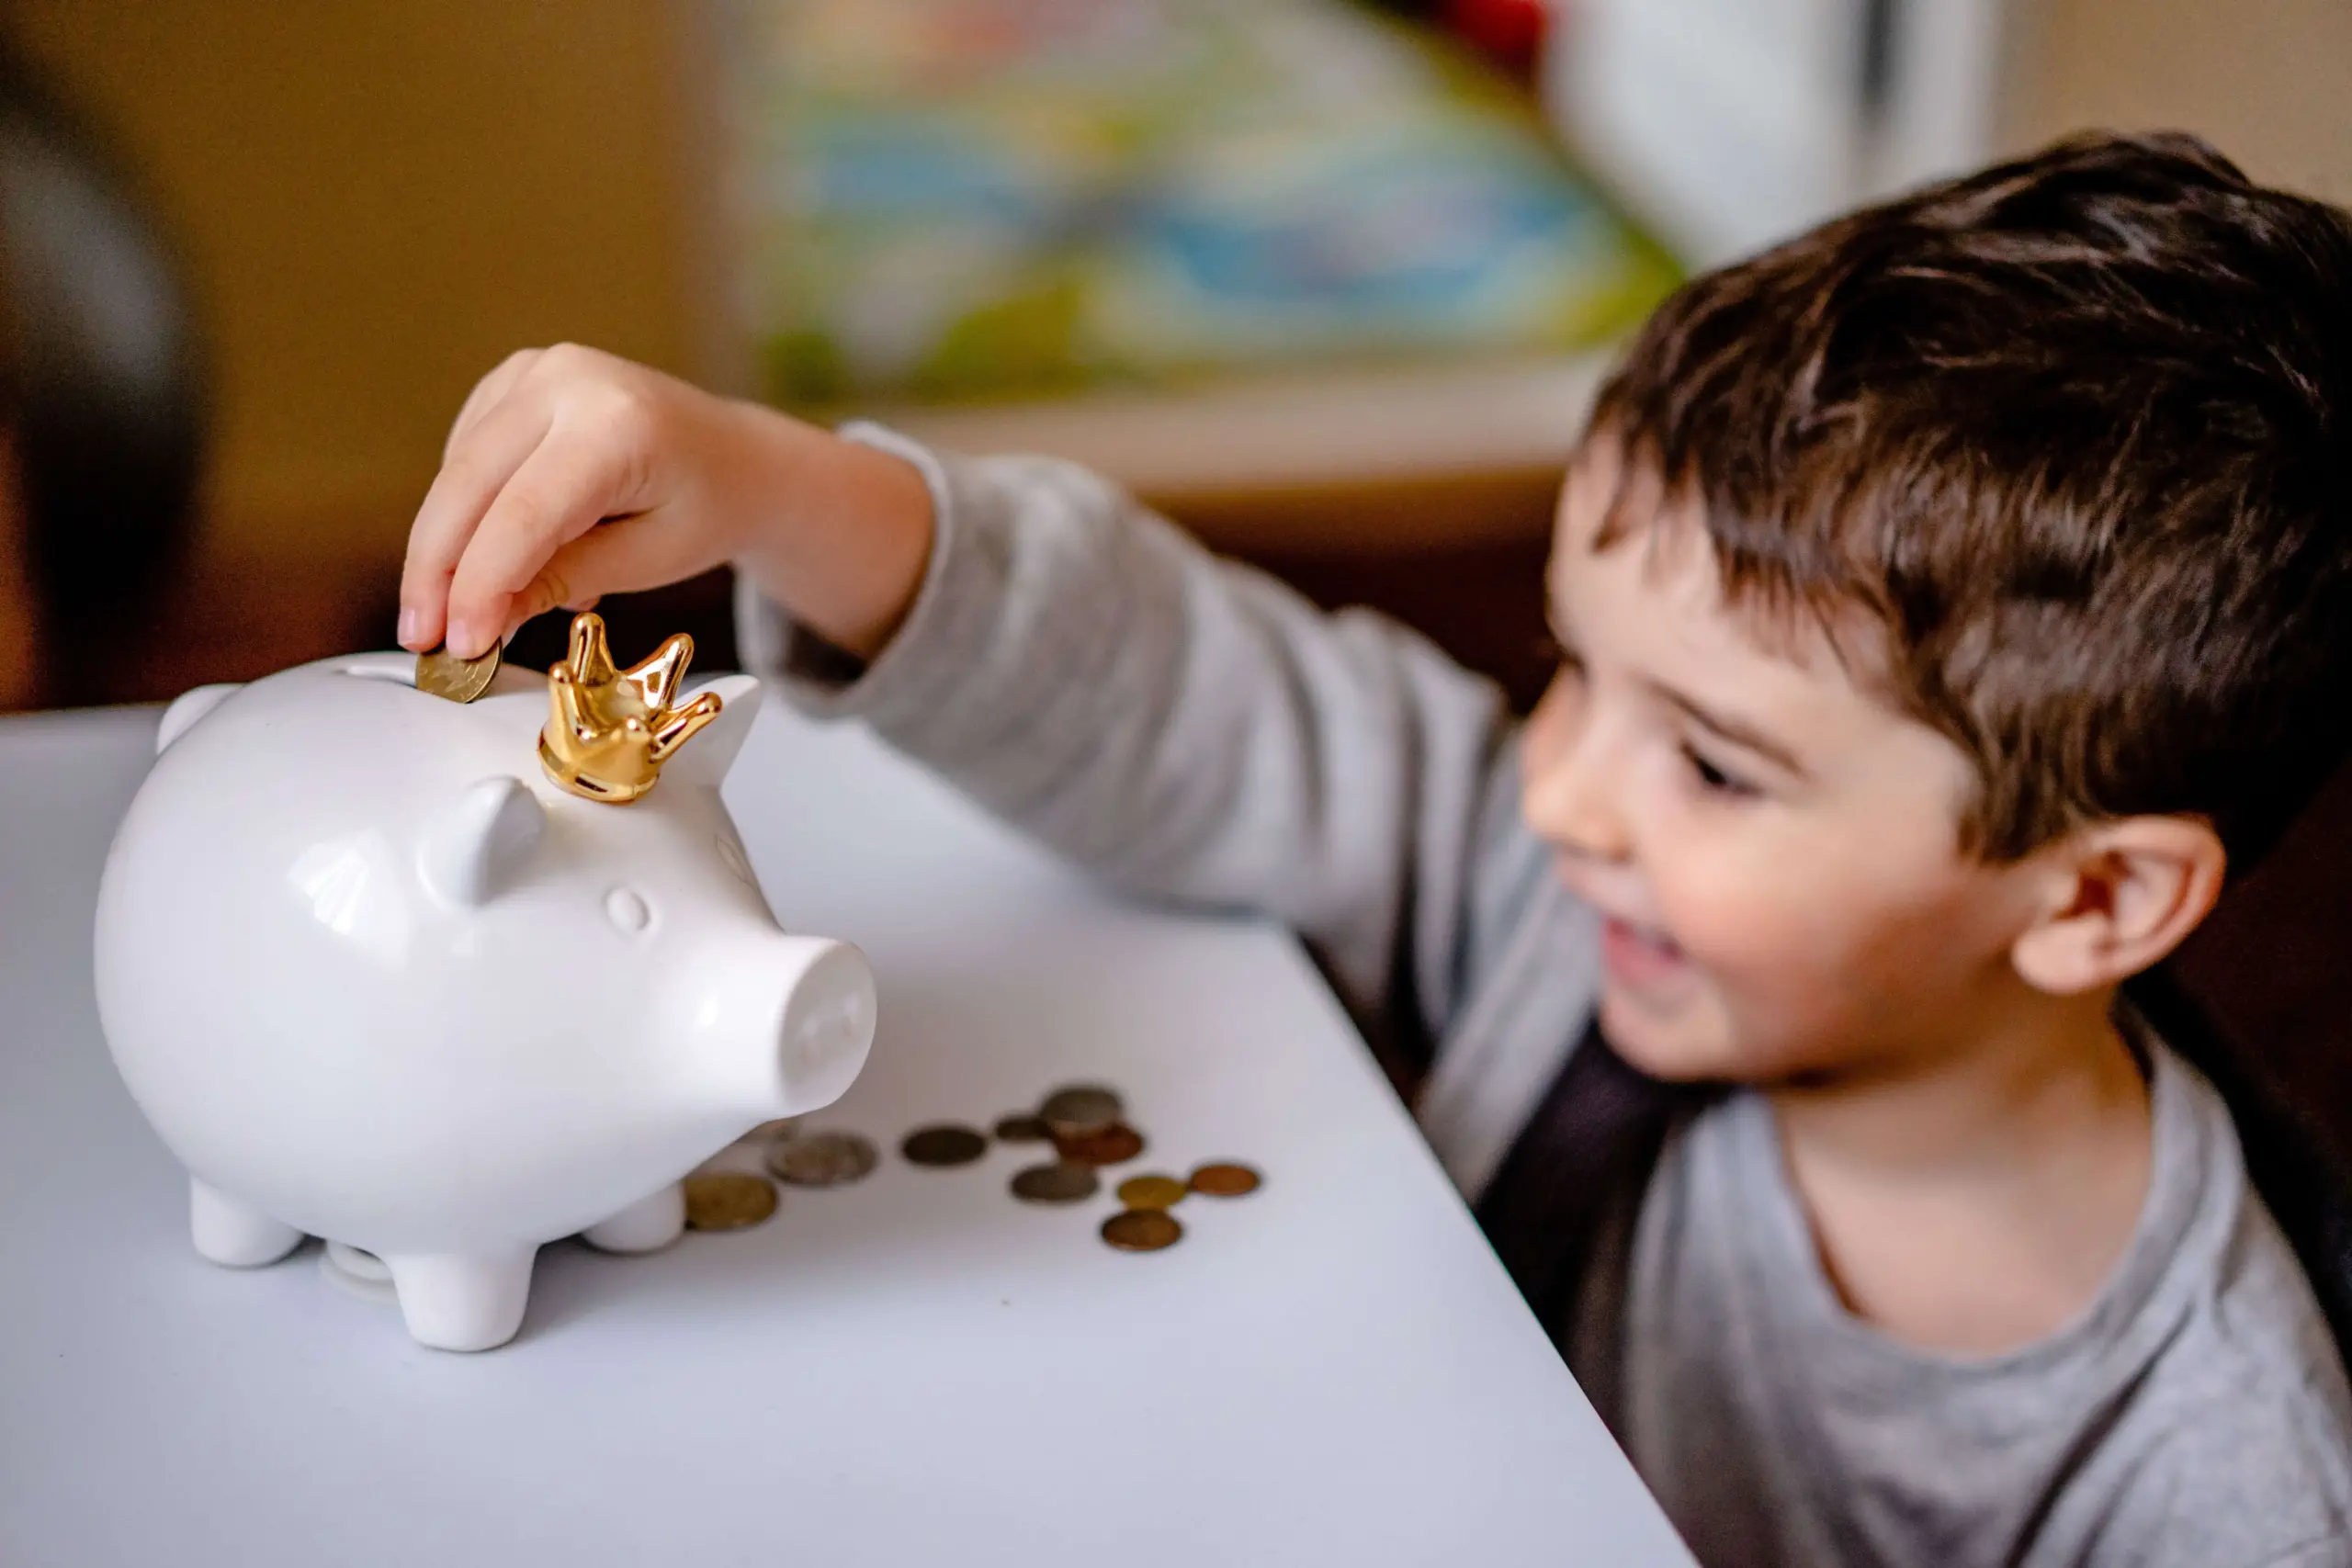 Educação Financeira para Crianças: 10 dicas importantes